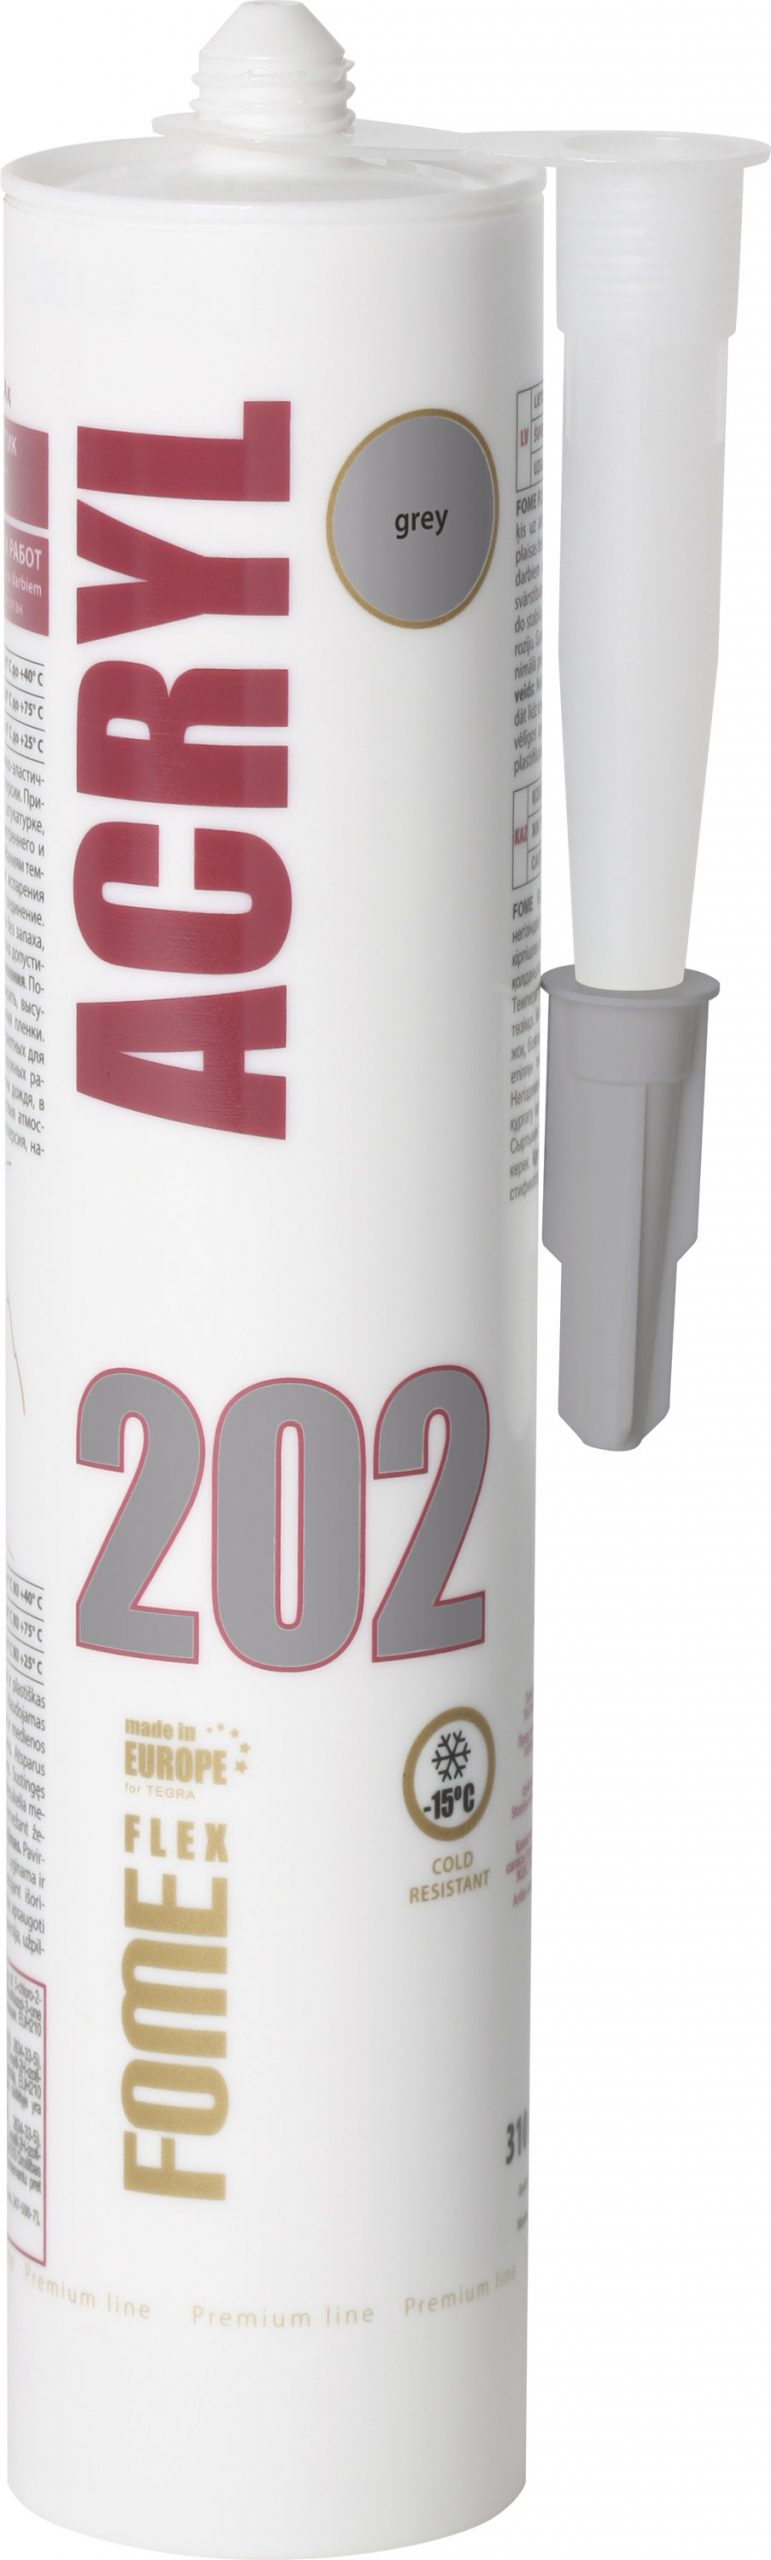 ACRYL 202 acrylic sealant